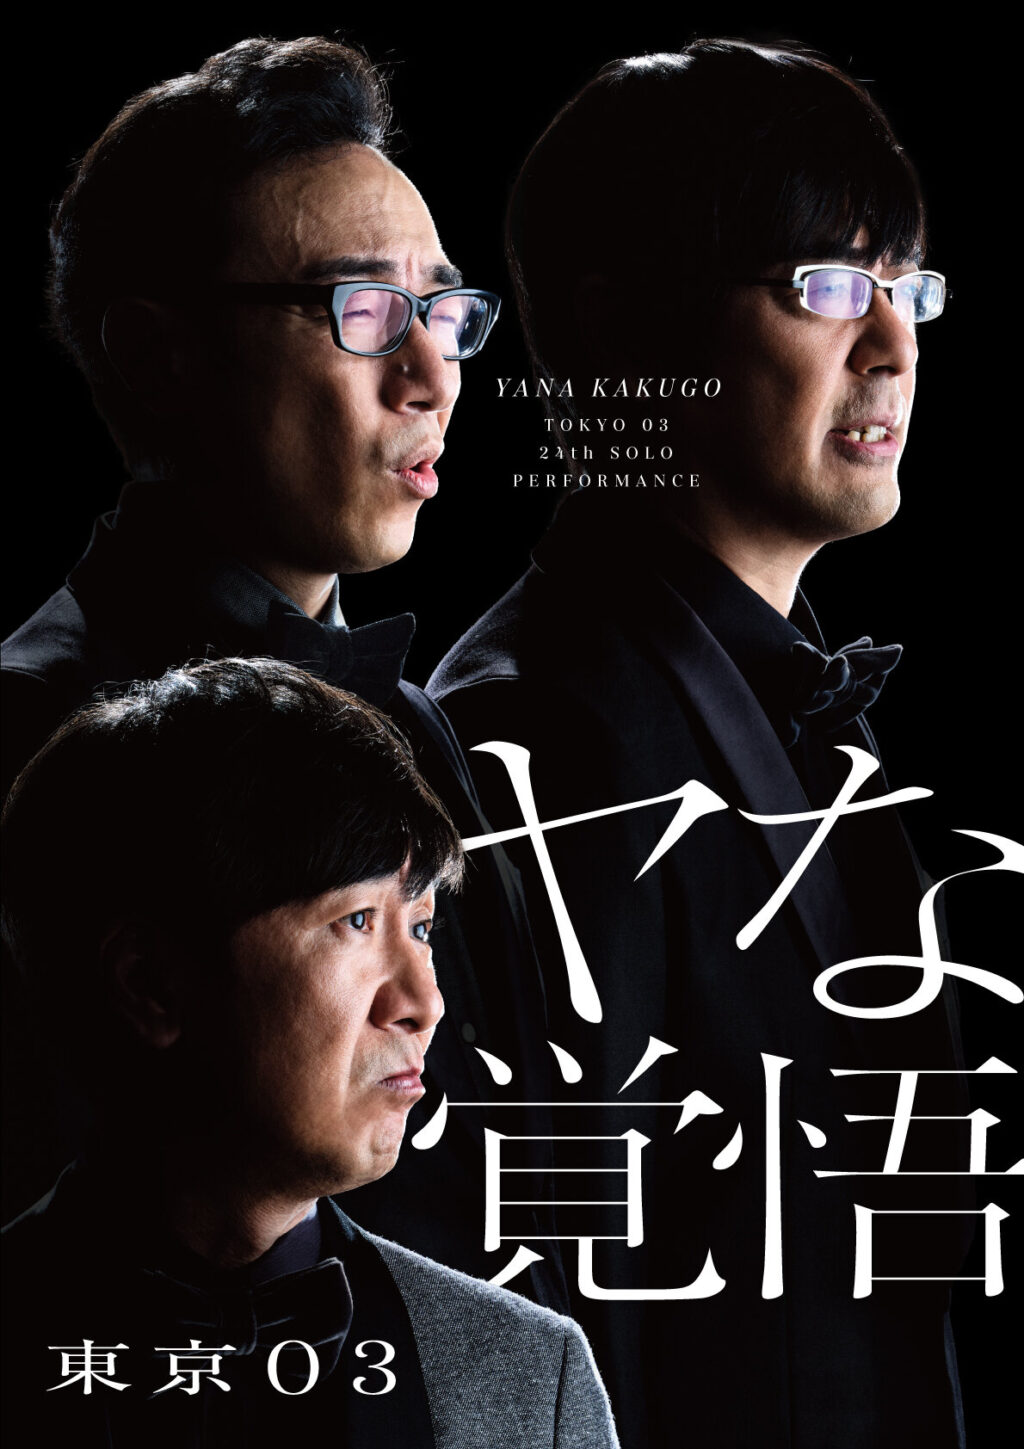 第11回東京03単独公演 「正論、異論、口論。」 [DVD]